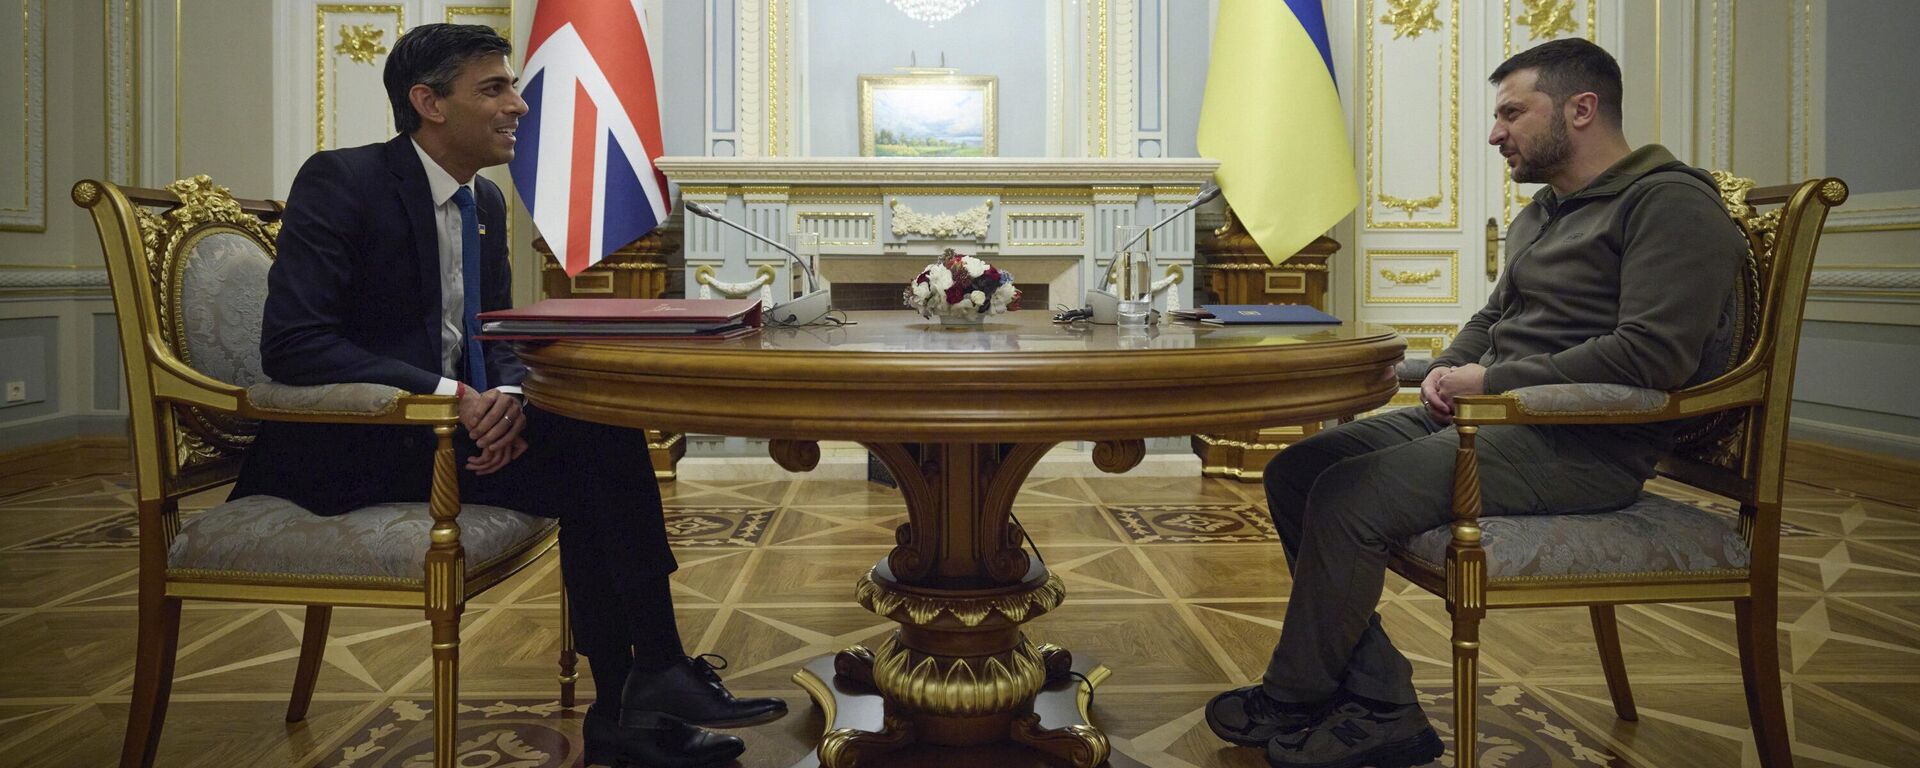 Nesta foto fornecida pela Assessoria de Imprensa Presidencial Ucraniana, o presidente ucraniano Vladimir Zelensky, à direita, fala com o primeiro-ministro britânico, Rishi Sunak, durante sua reunião em Kyiv, Ucrânia, 19 de novembro de 2022 - Sputnik Brasil, 1920, 19.11.2022